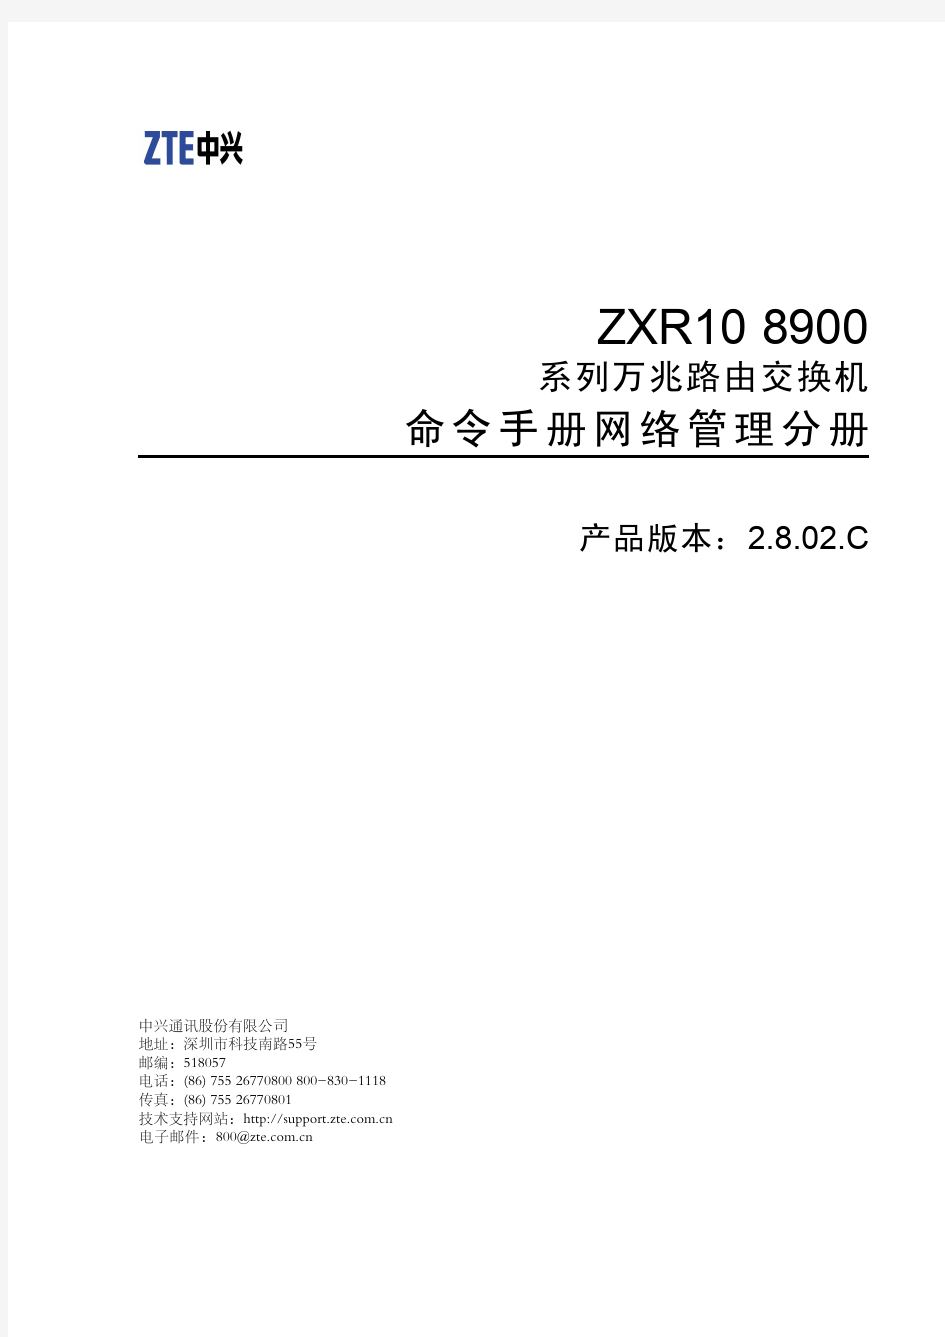 路由交换机ZXR10 8900命令手册(网络管理分册)